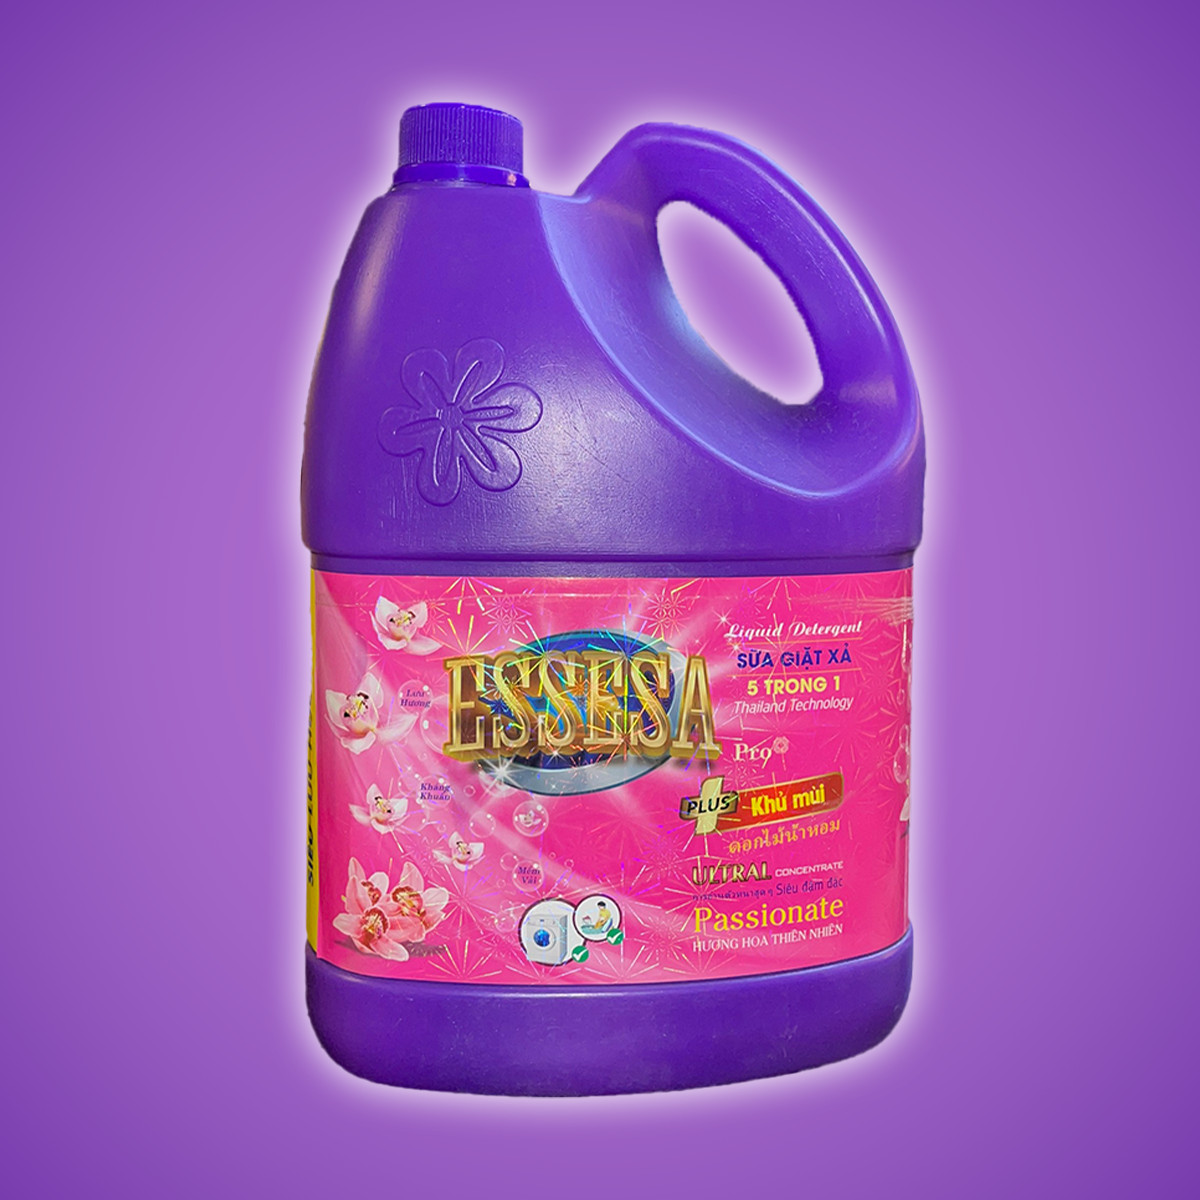 Sữa giặt Essesa Pro Khử Mùi 3.8kg Với Tinh Chất Hương Nước Hoa Pháp Nồng Nàn Quyến Rủ